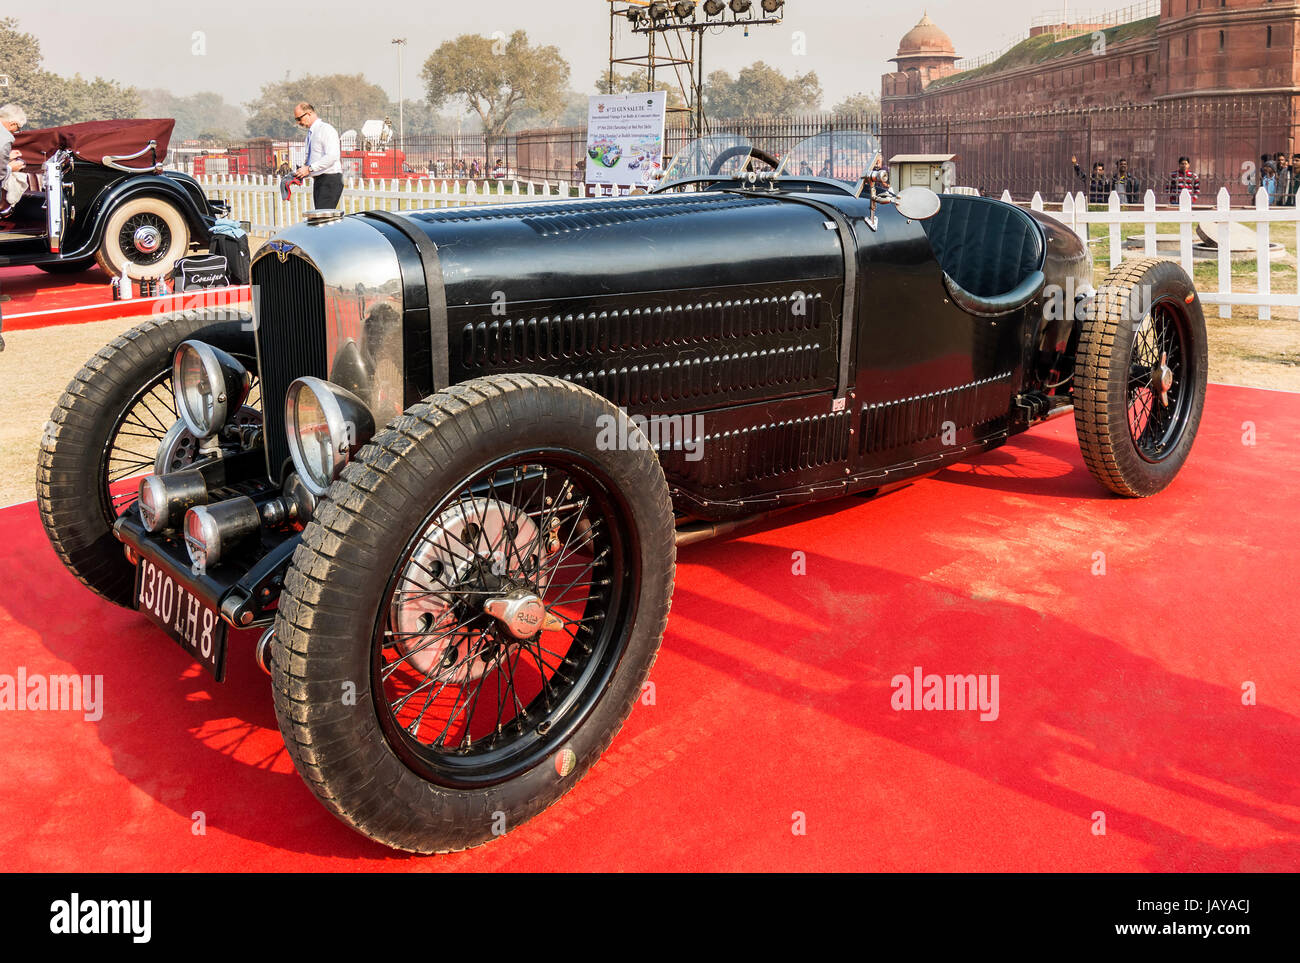 New Delhi, Indien - Februar 6, 2016: Retro Bugatti Oldtimer Sportwagen auf Anzeige am 21 Gun Salute Internationale Oldtimer Rallye 2016 am Roten Fort Stockfoto